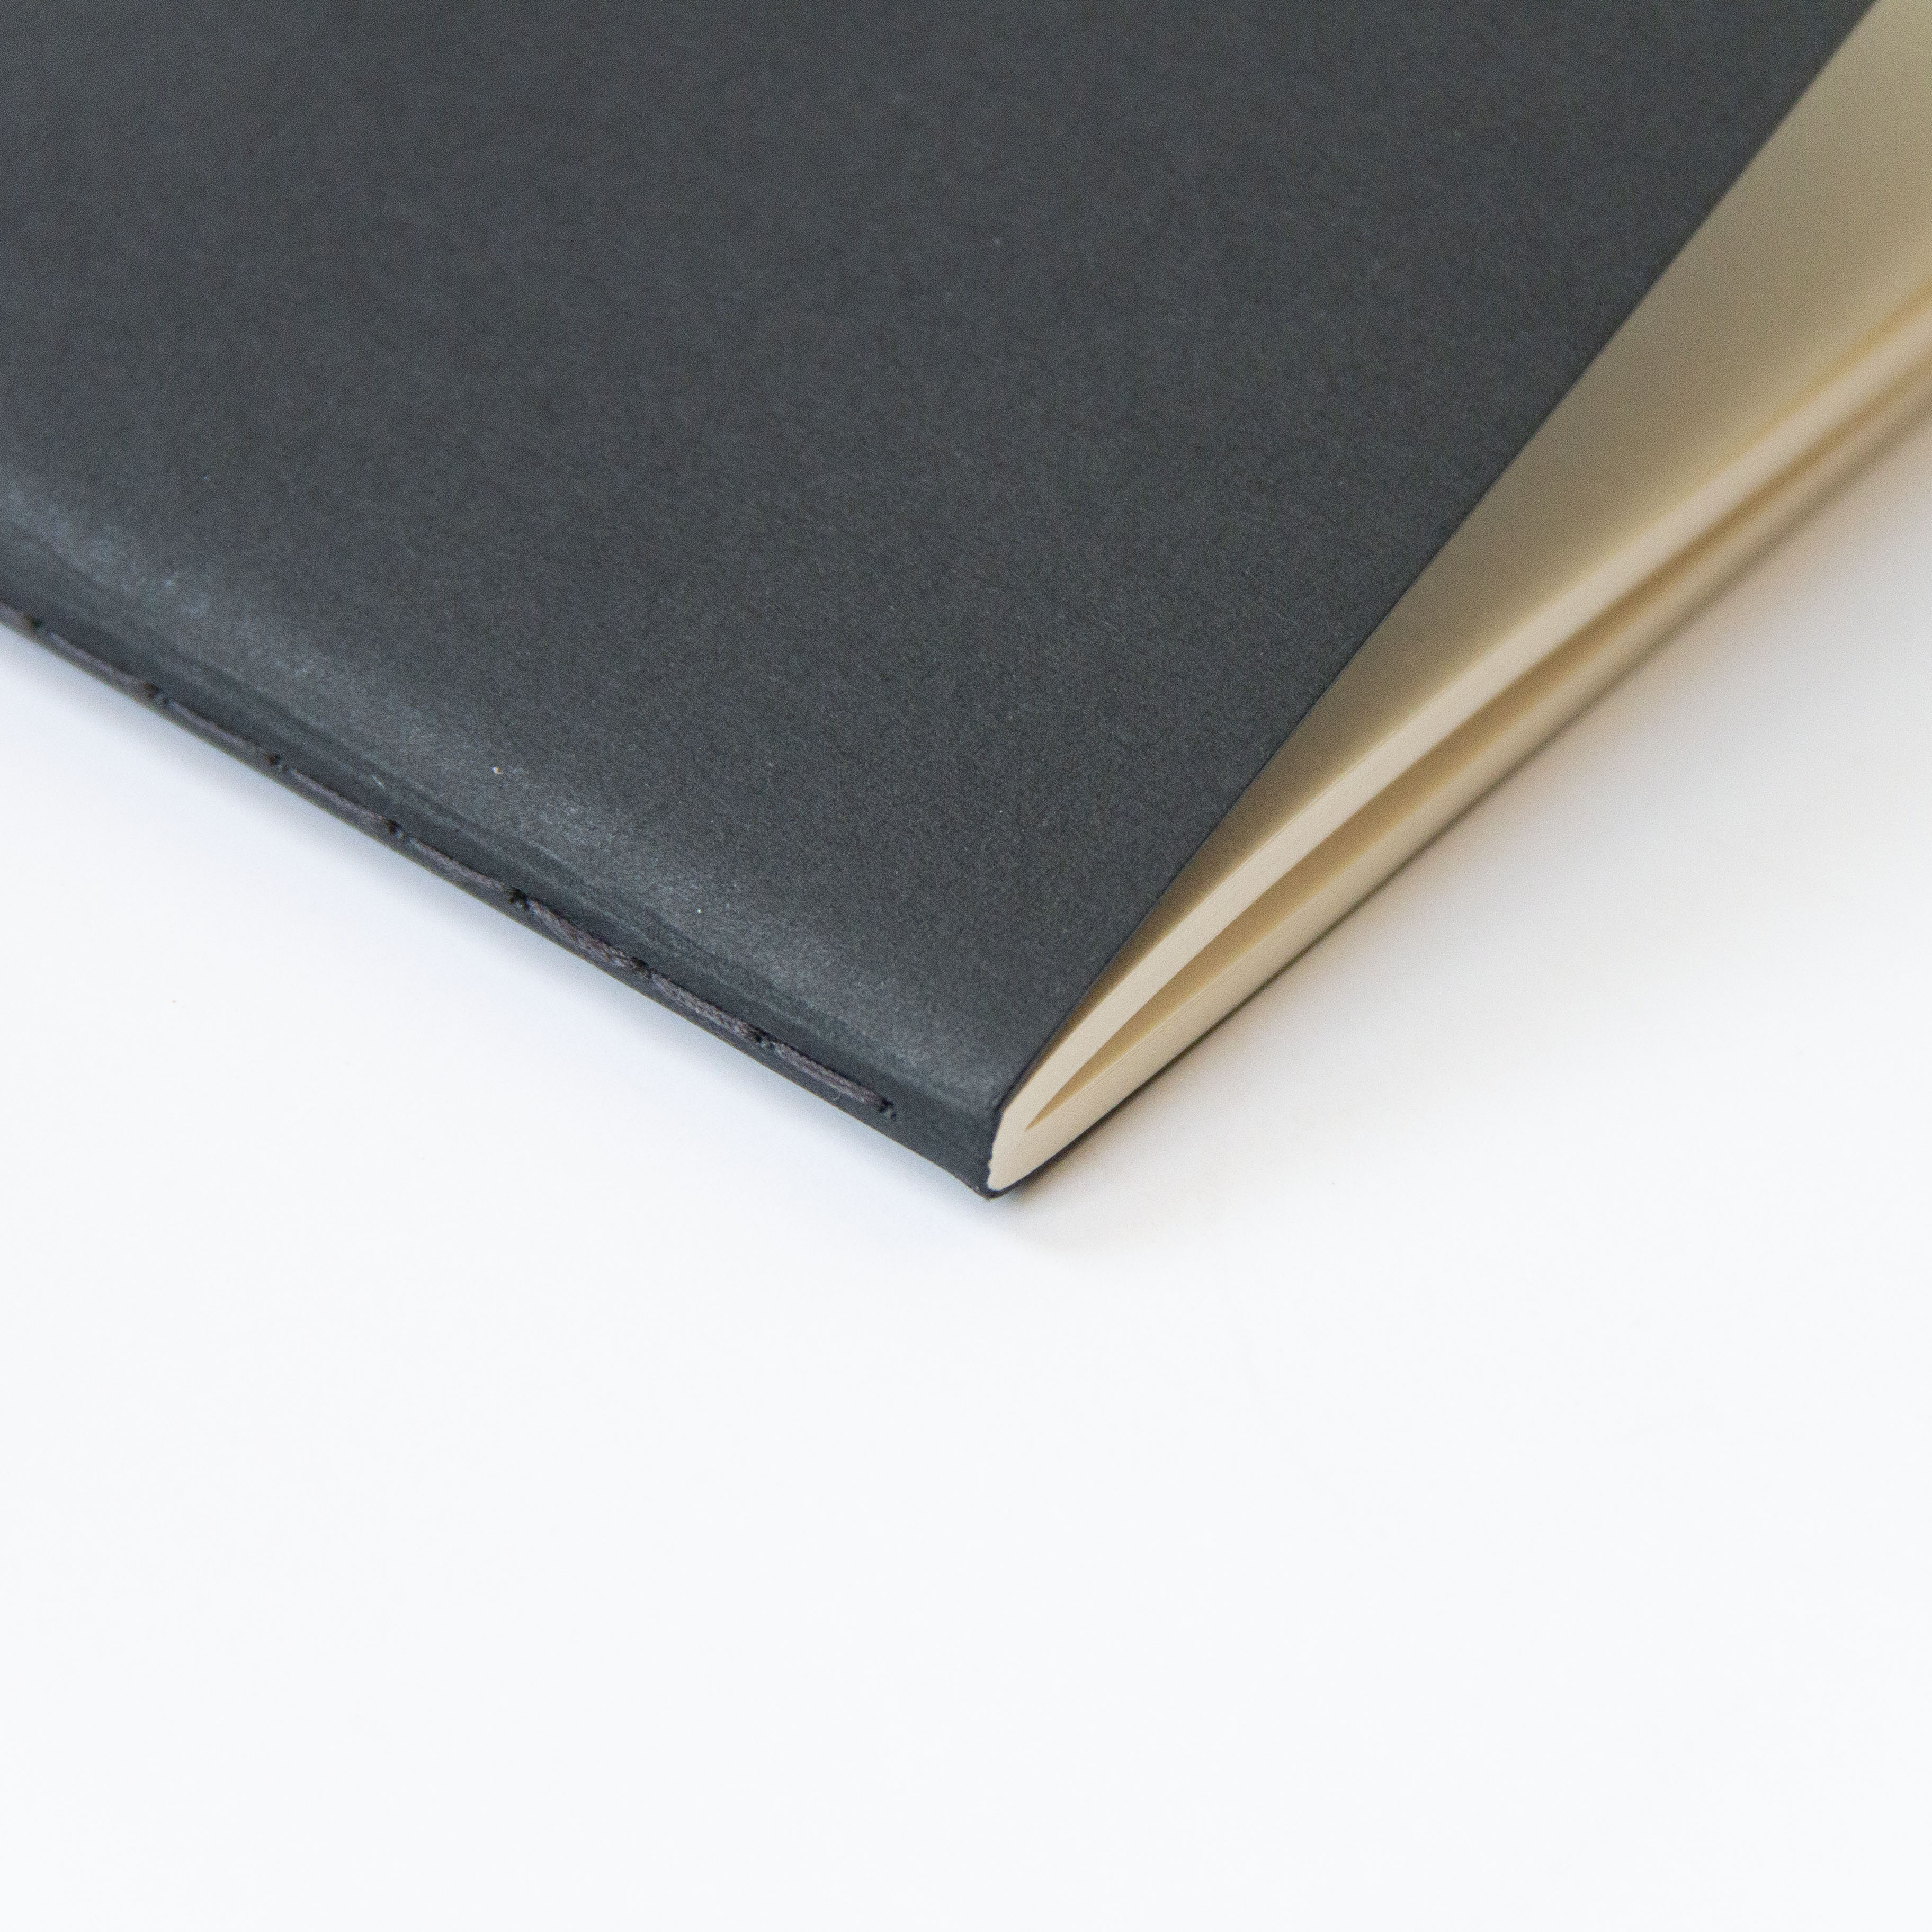 OCTÀGON DESIGN | "Awkward ideas" notebook details. Binding with black thread.